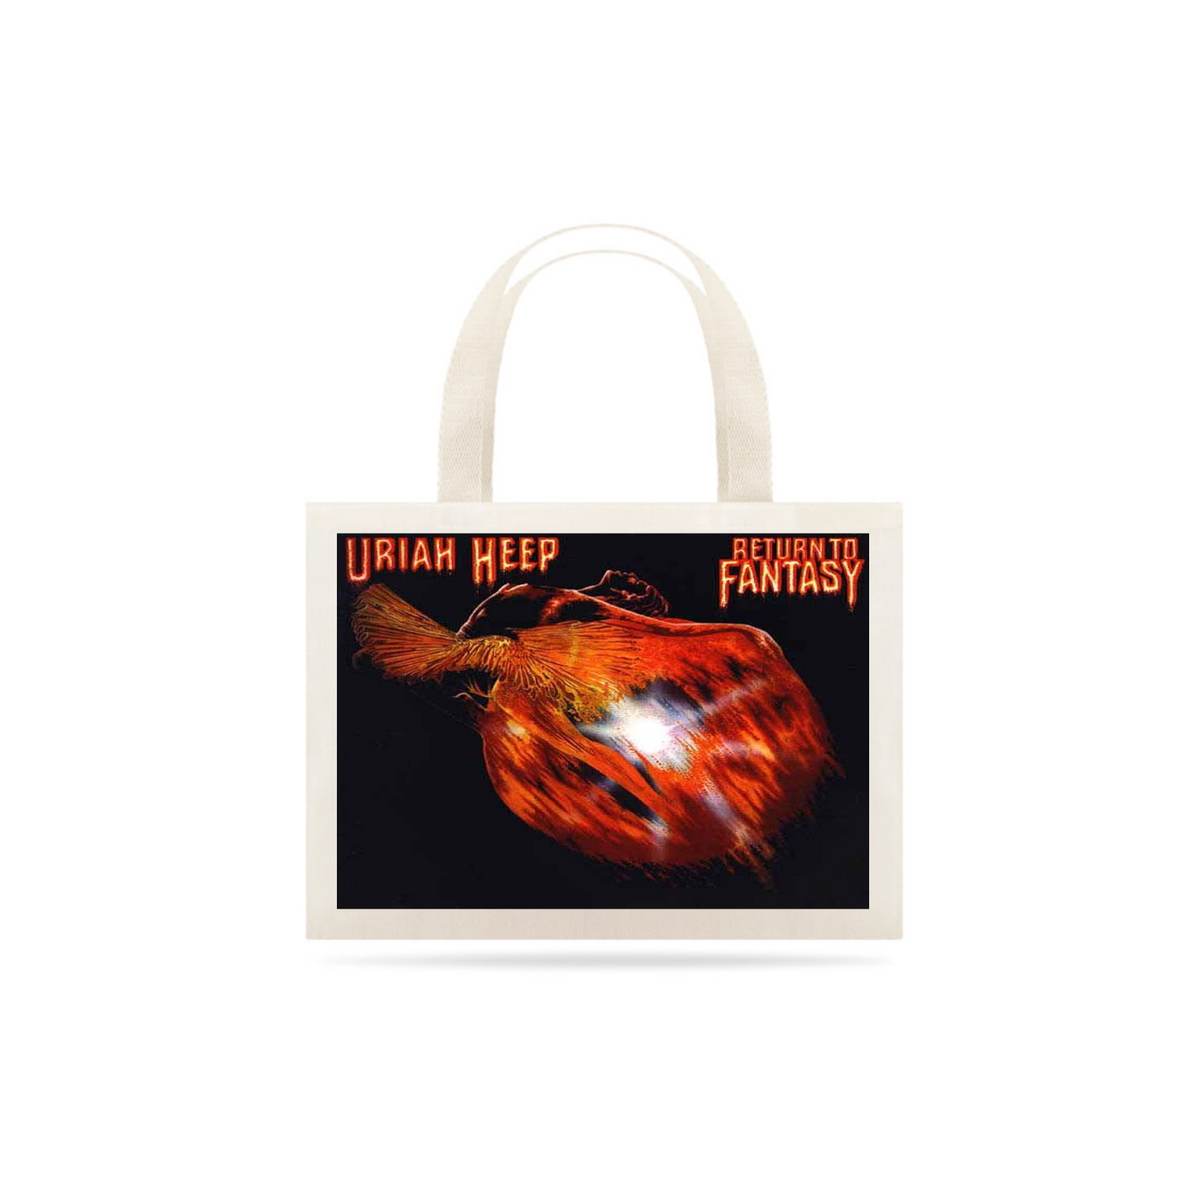 Nome do produto: Uriah Heep - Return to Fantasy